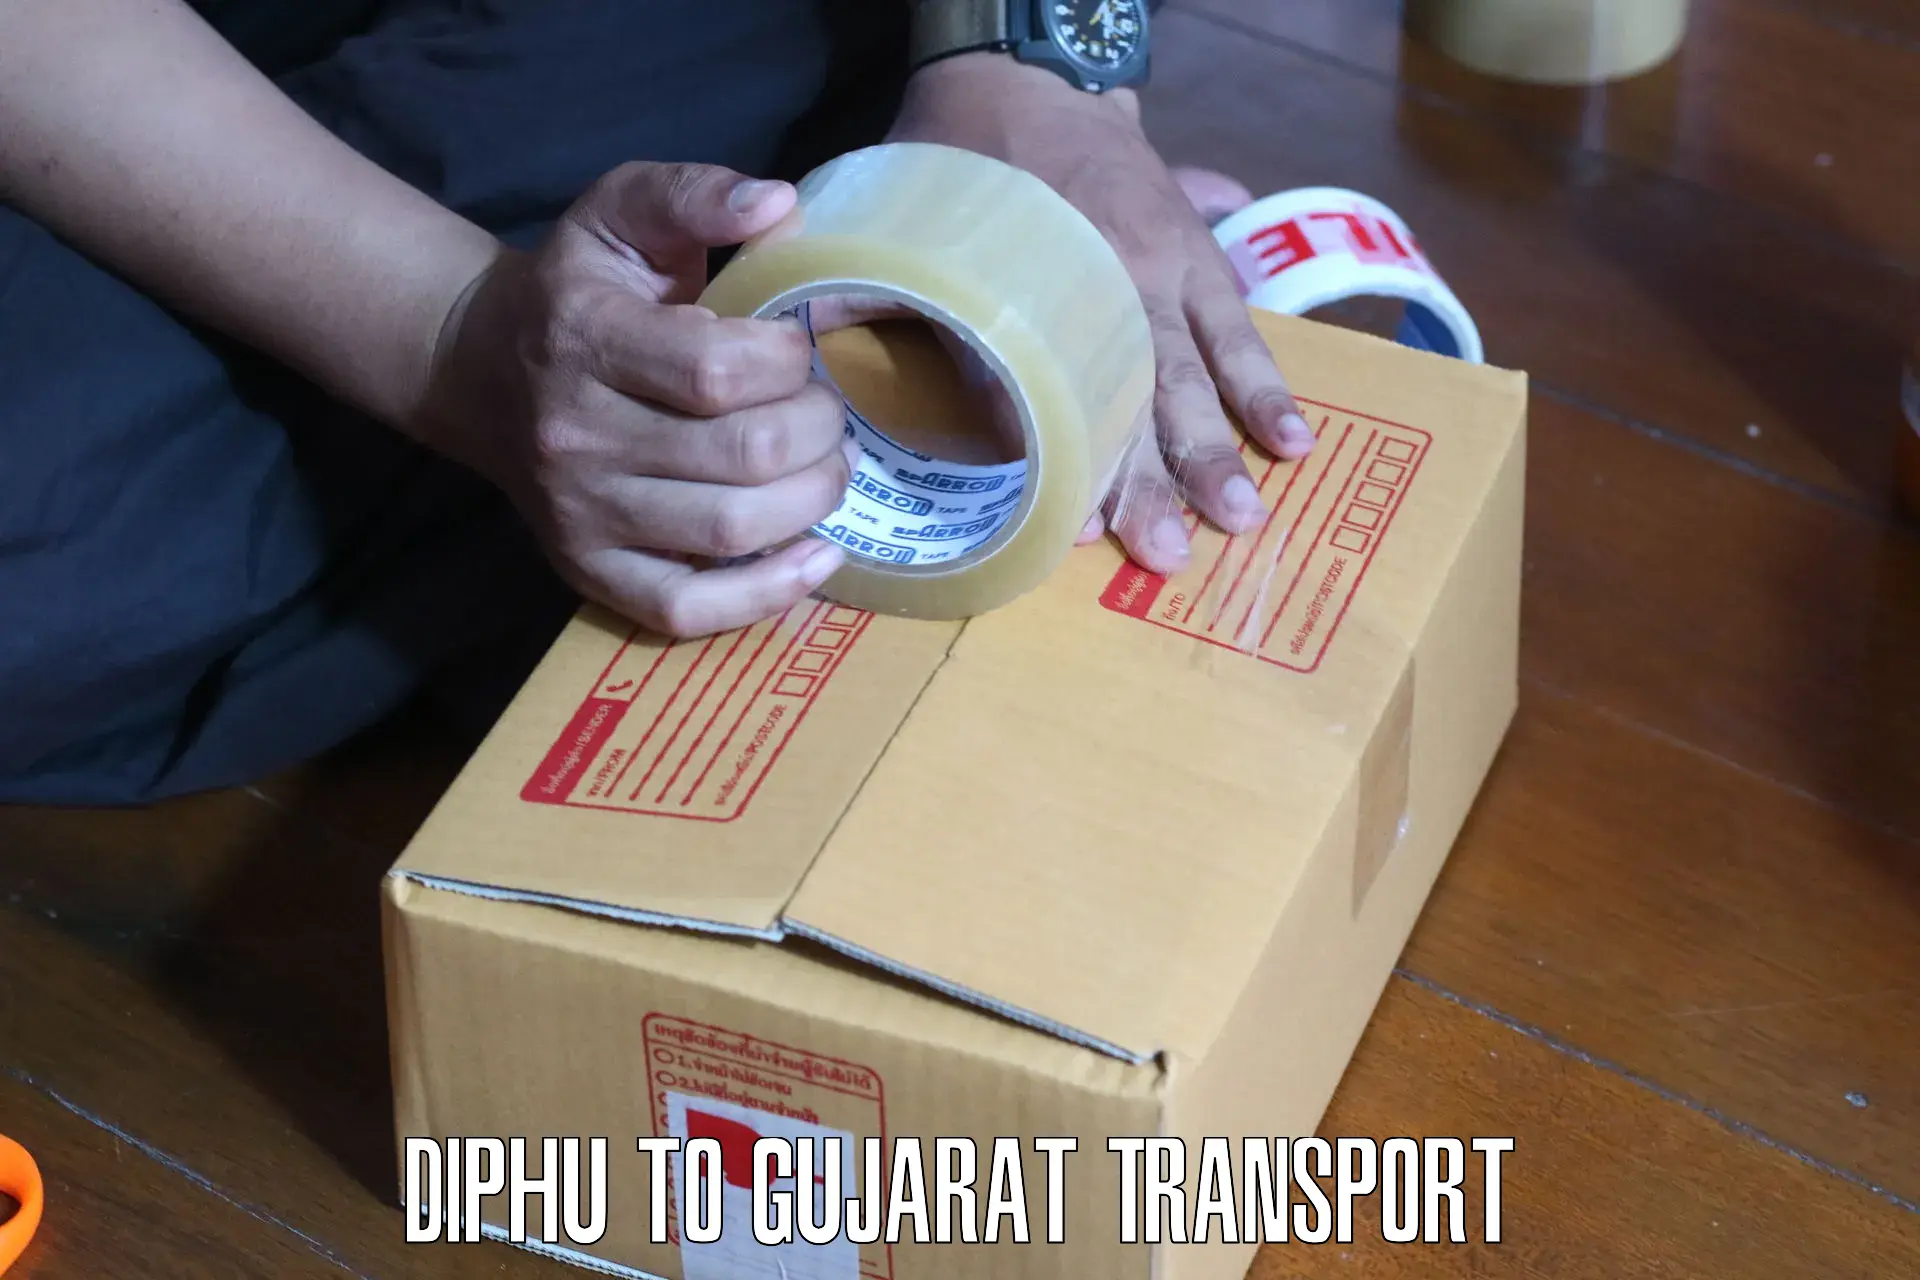 Nearest transport service Diphu to Deesa